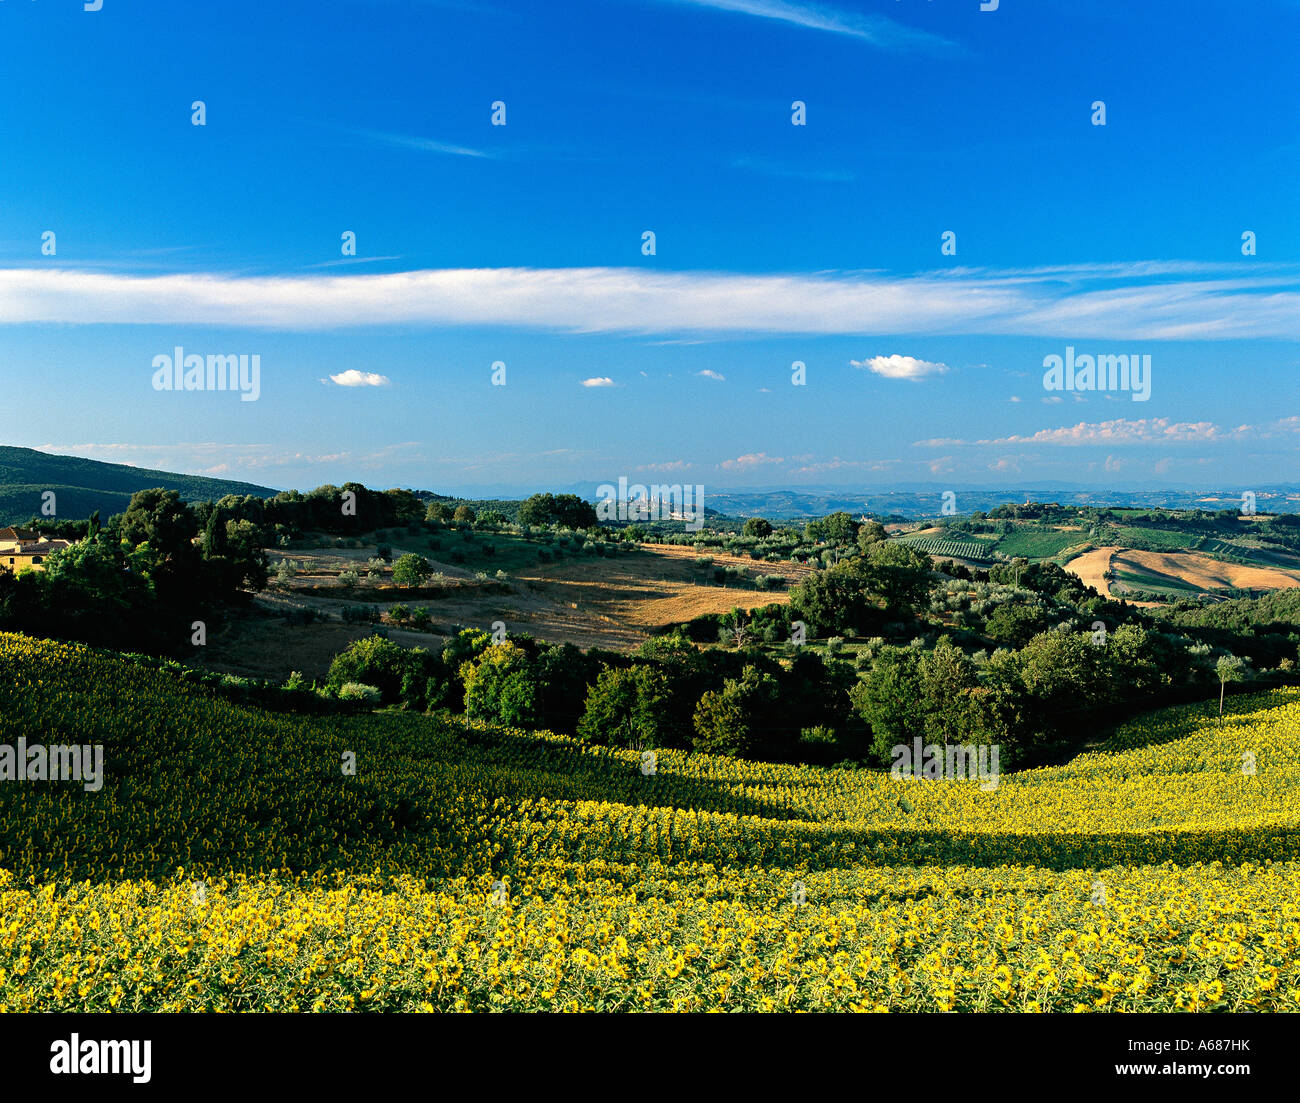 Las torres de San Gimignano, Toscana, Italia, visto en la distancia a través de un campo de girasoles en luz del atardecer Foto de stock